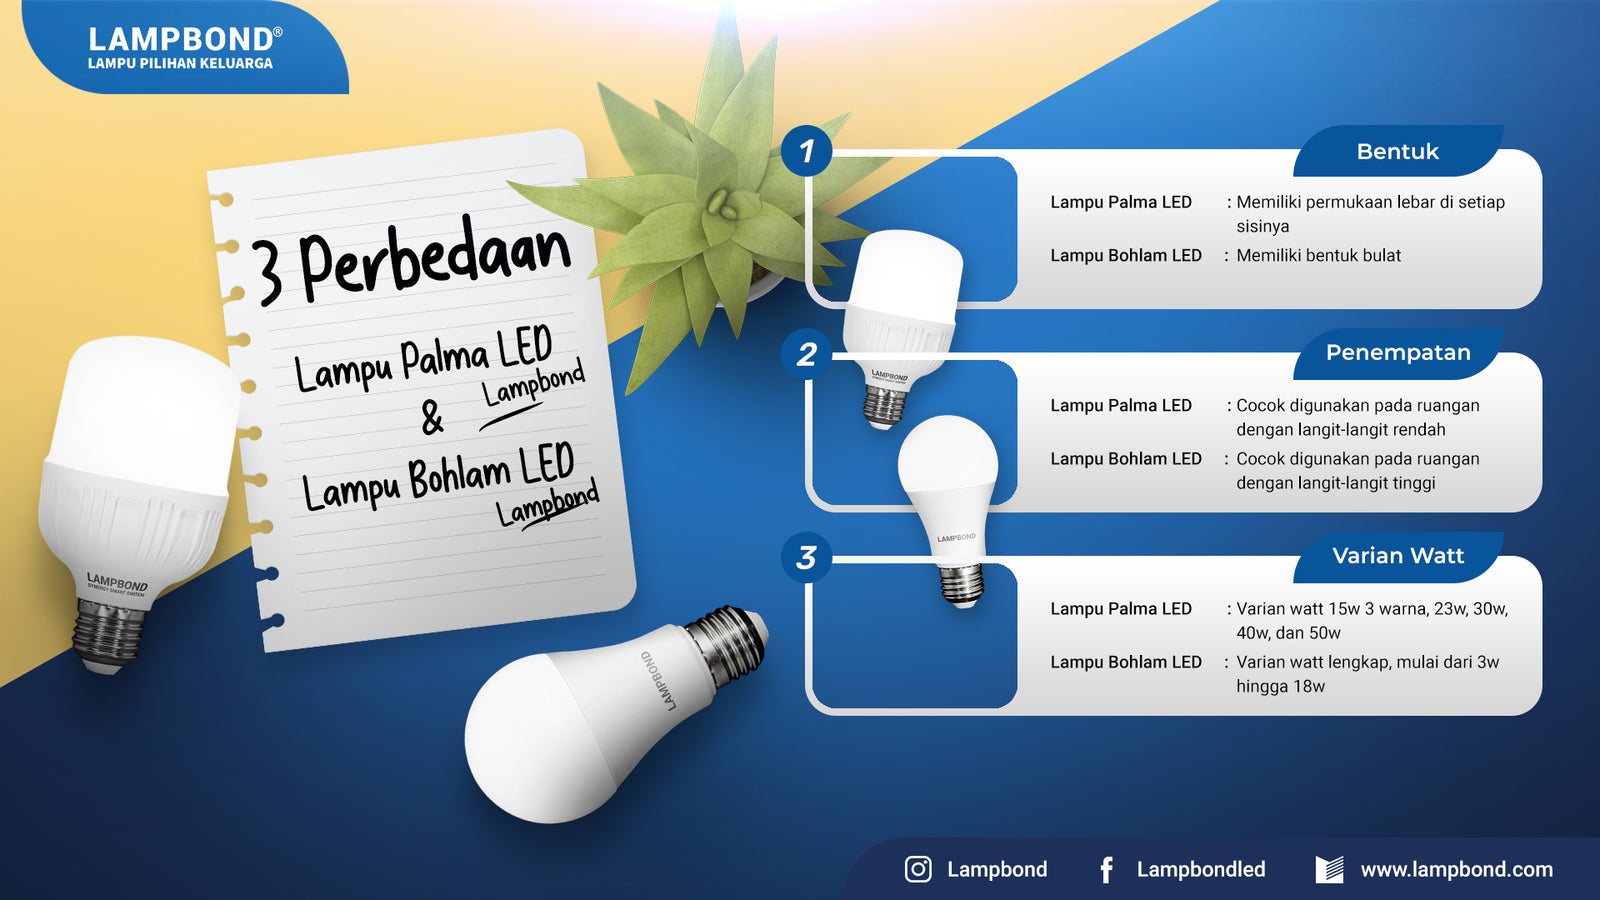 Simak ini 3 perbedaan antara lampu Palma LED Lampbond & lampu Bohlam LED Lampbond